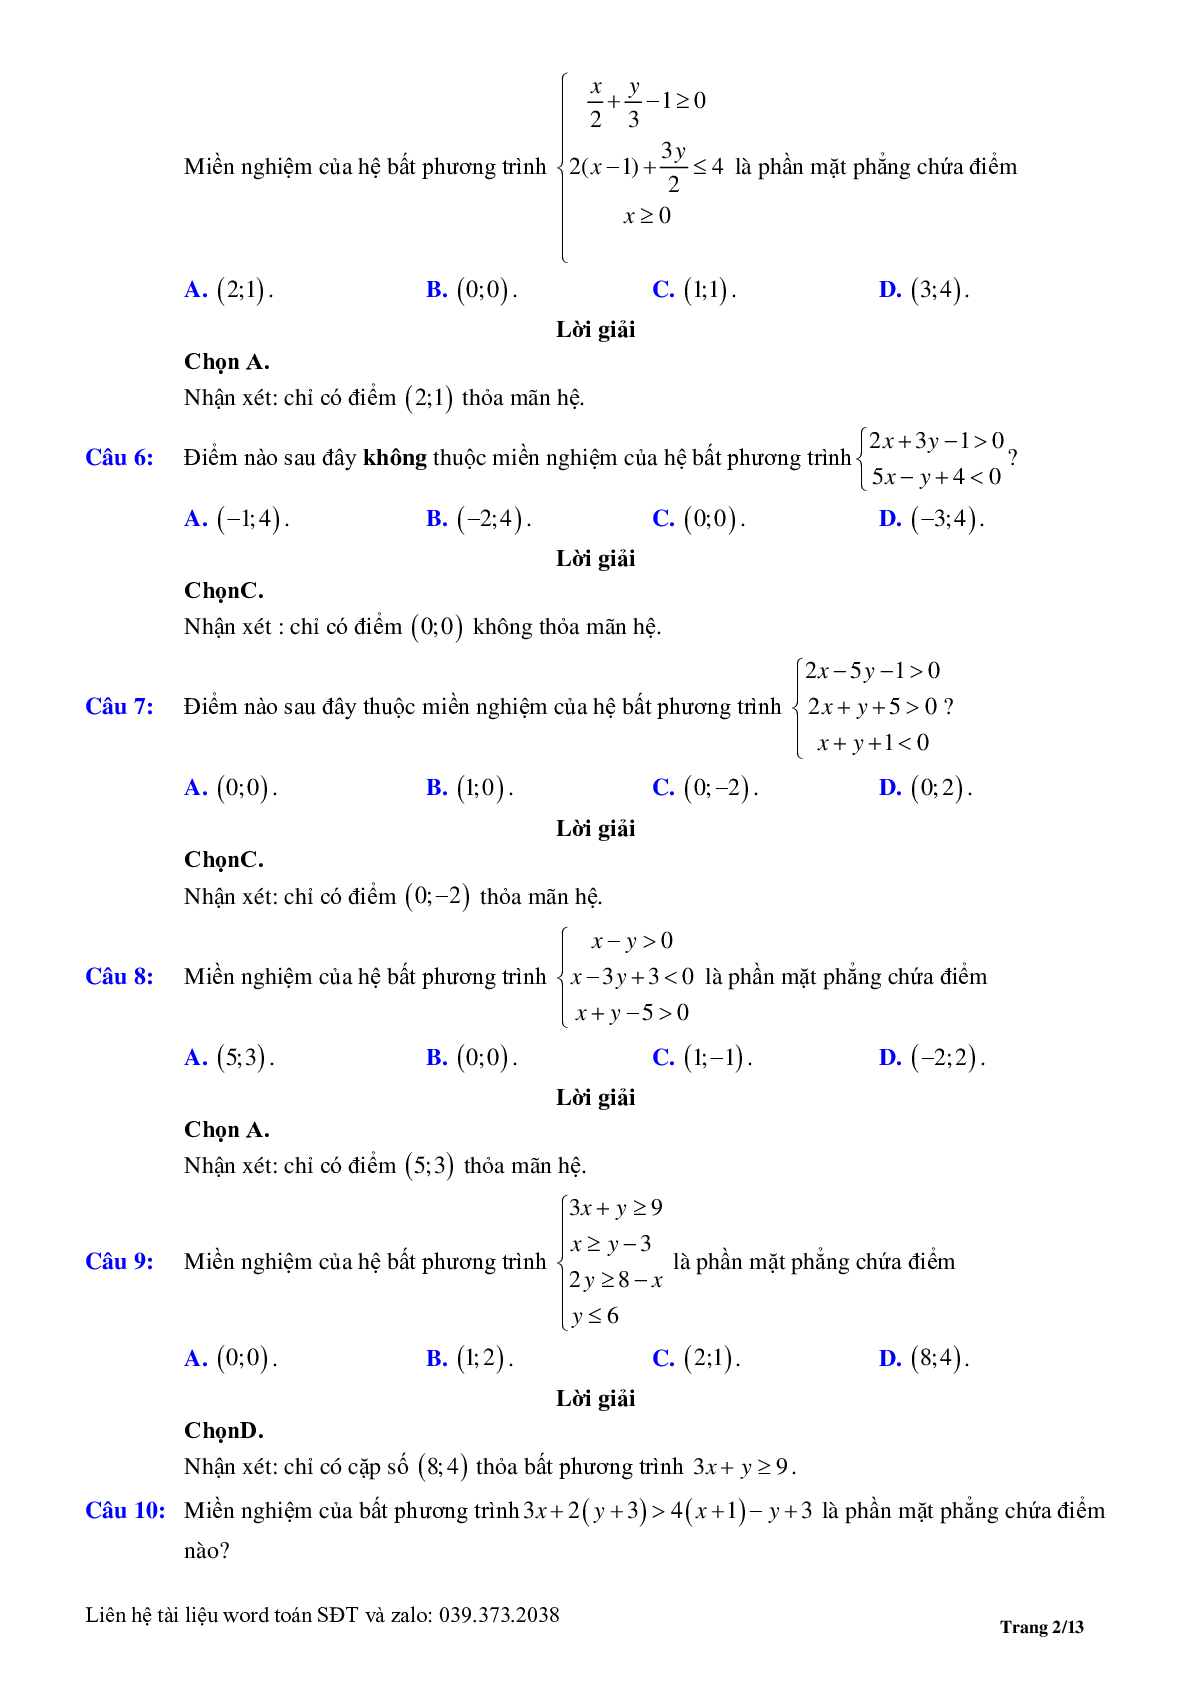 Chuyên đề bất phương trình, hệ phương trình bậc nhất hai ẩn (trang 2)